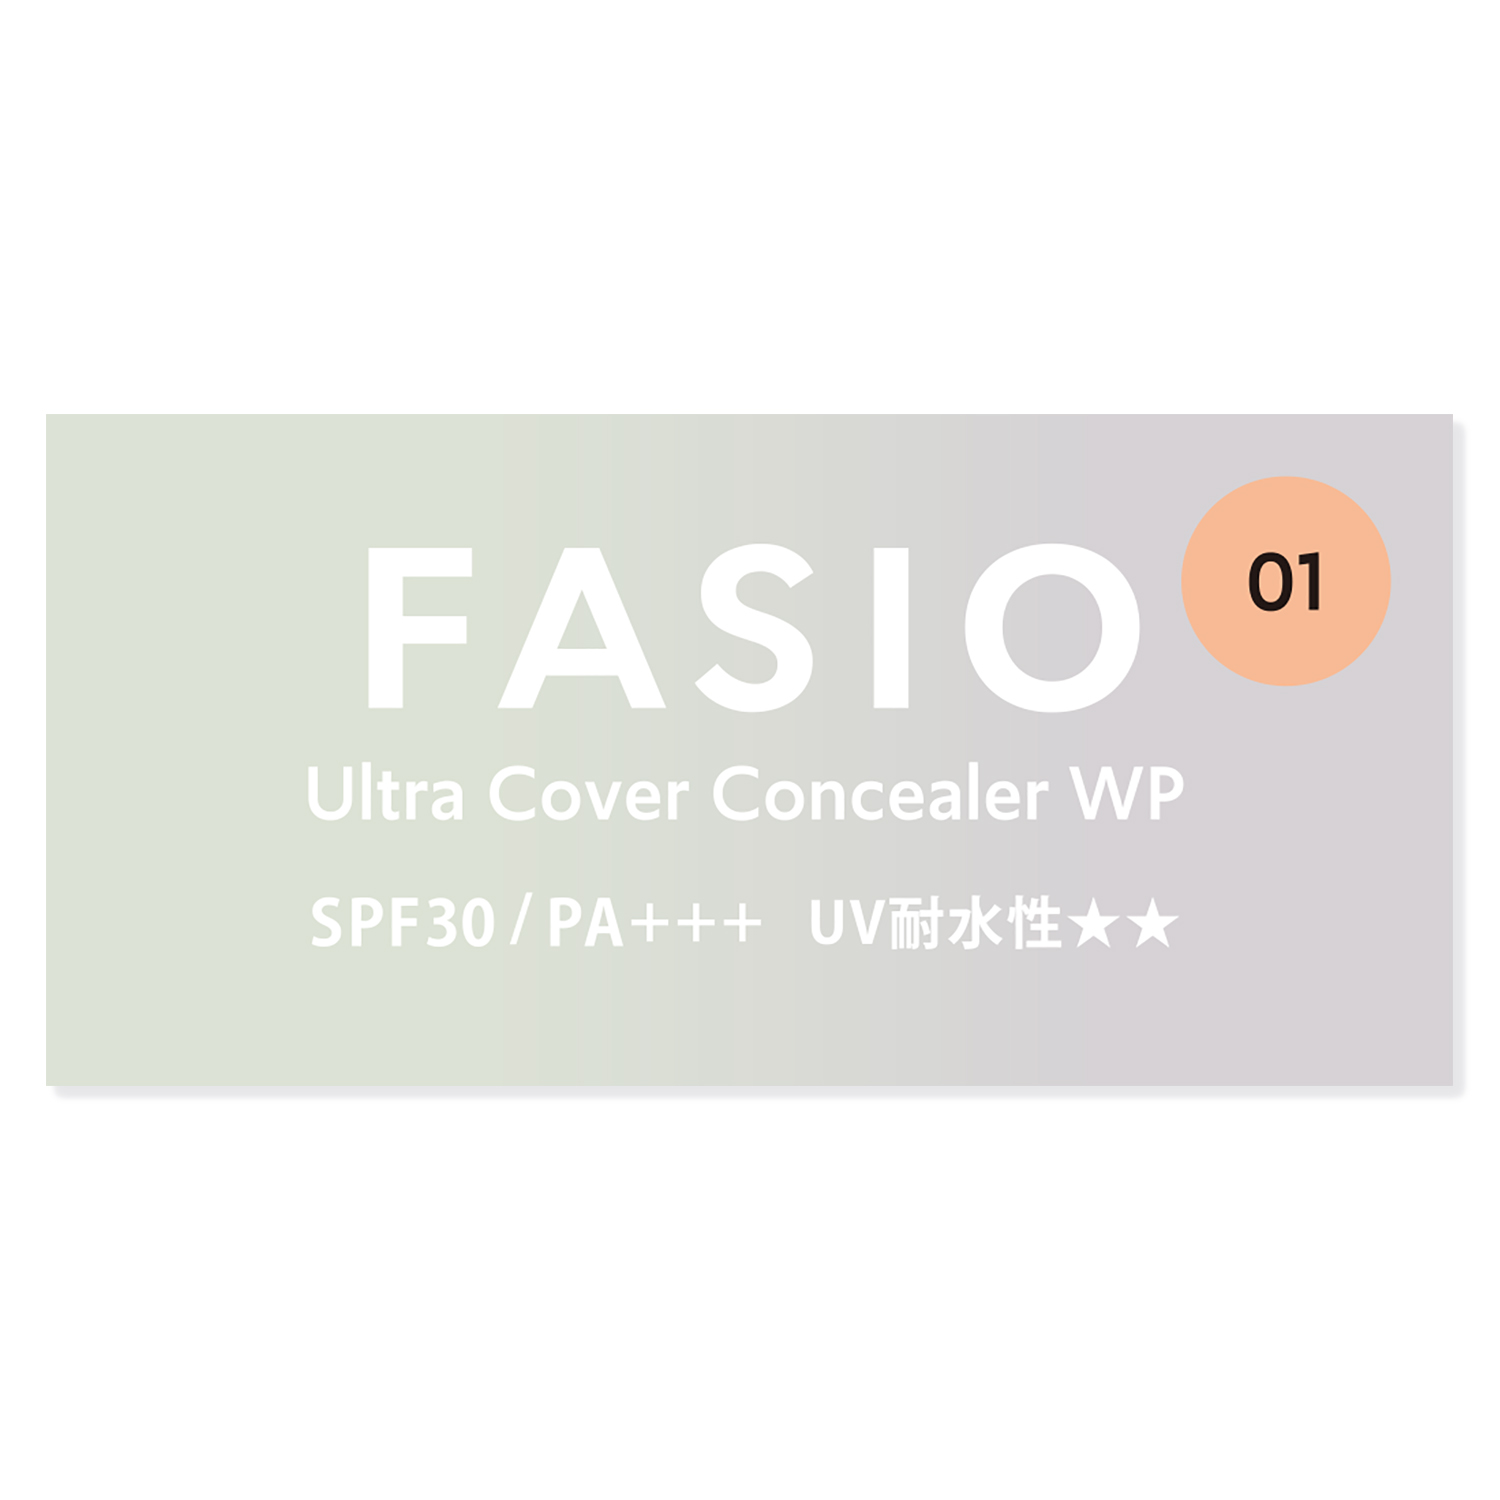 コーセー ファシオ ウルトラカバー コンシーラー WP 01 ライトベージュ SPF30 PA+++ (10g) FASIO